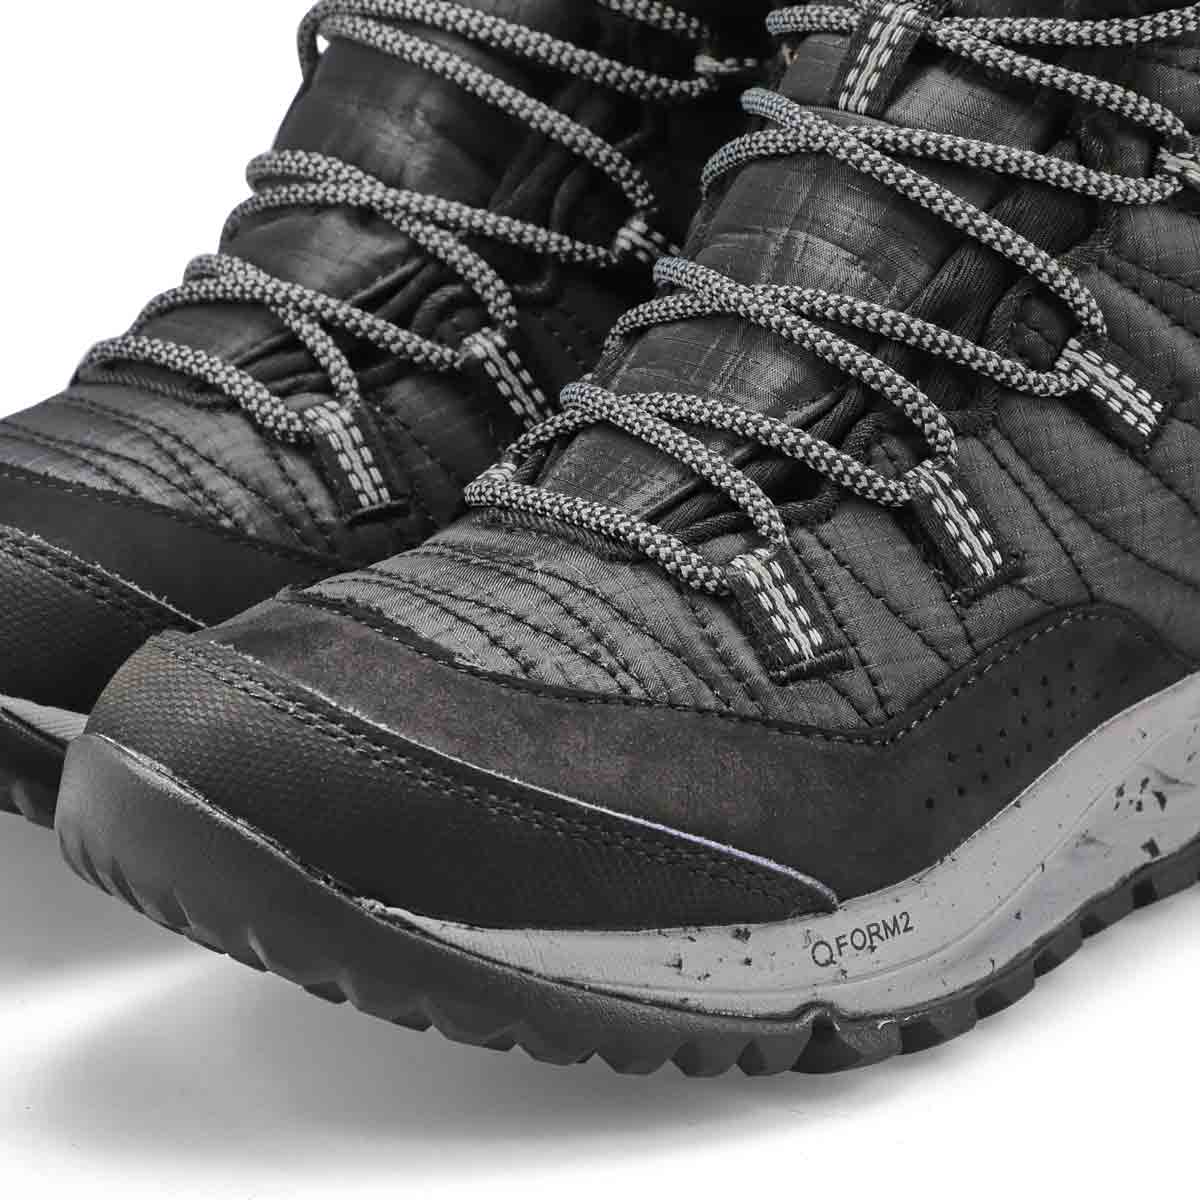 Women's Antora Sneaker Boot Waterproof Winter Boot - Black